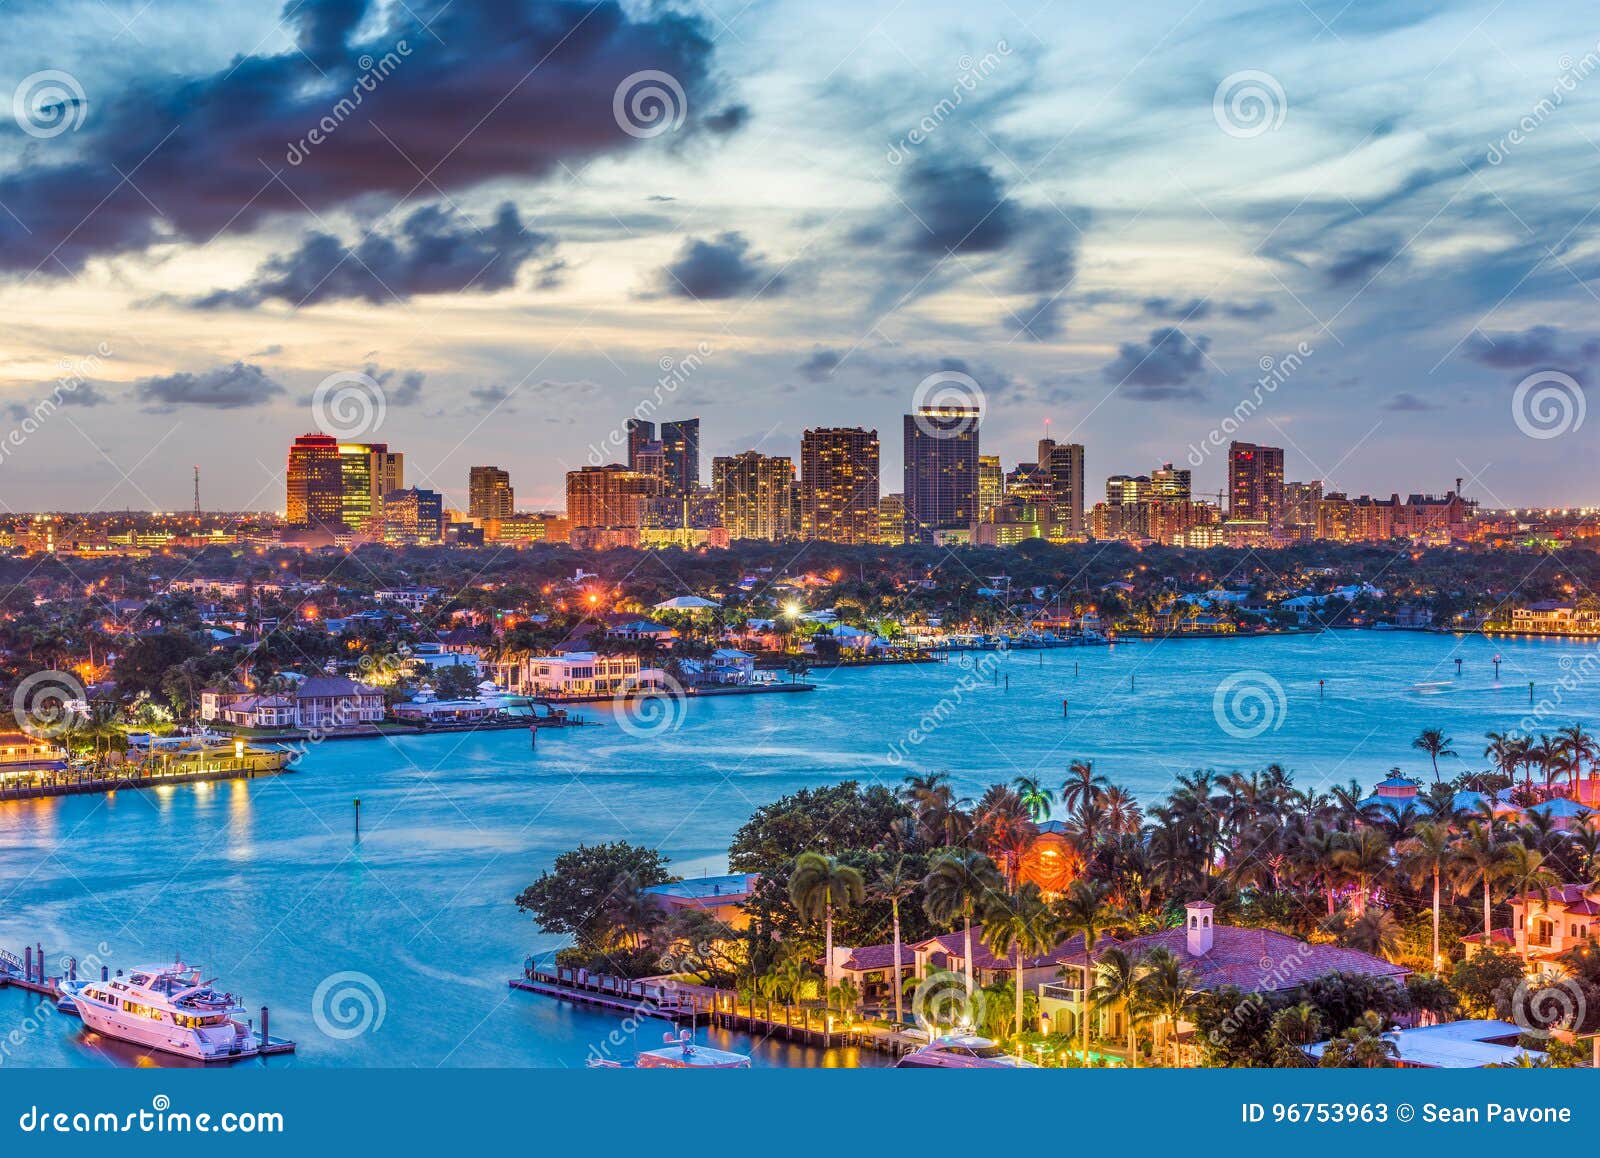 壁紙，2560x1706，美国，房屋，喷泉，Jacksonville，佛罗里达州，城市，下载，照片